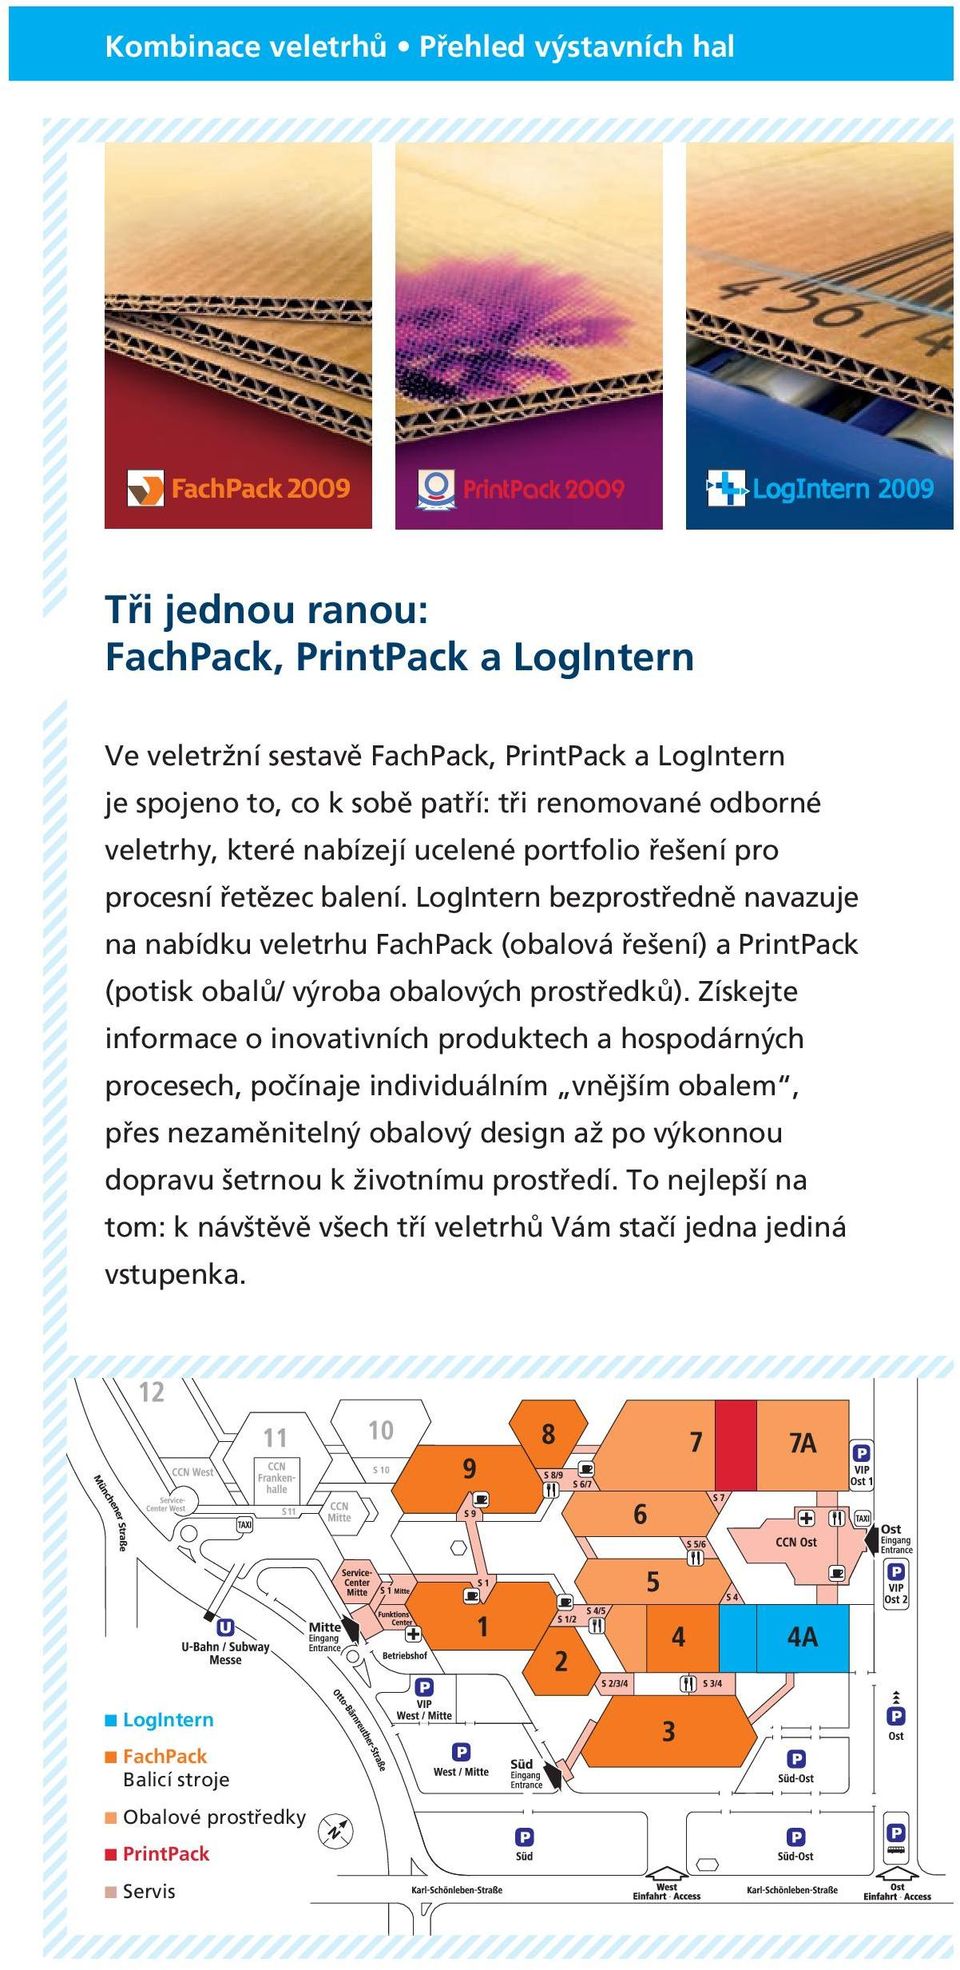 LogIntern bezprostředně navazuje na nabídku veletrhu FachPack (obalová řešení) a PrintPack (potisk obalů/ výroba obalových prostředků).